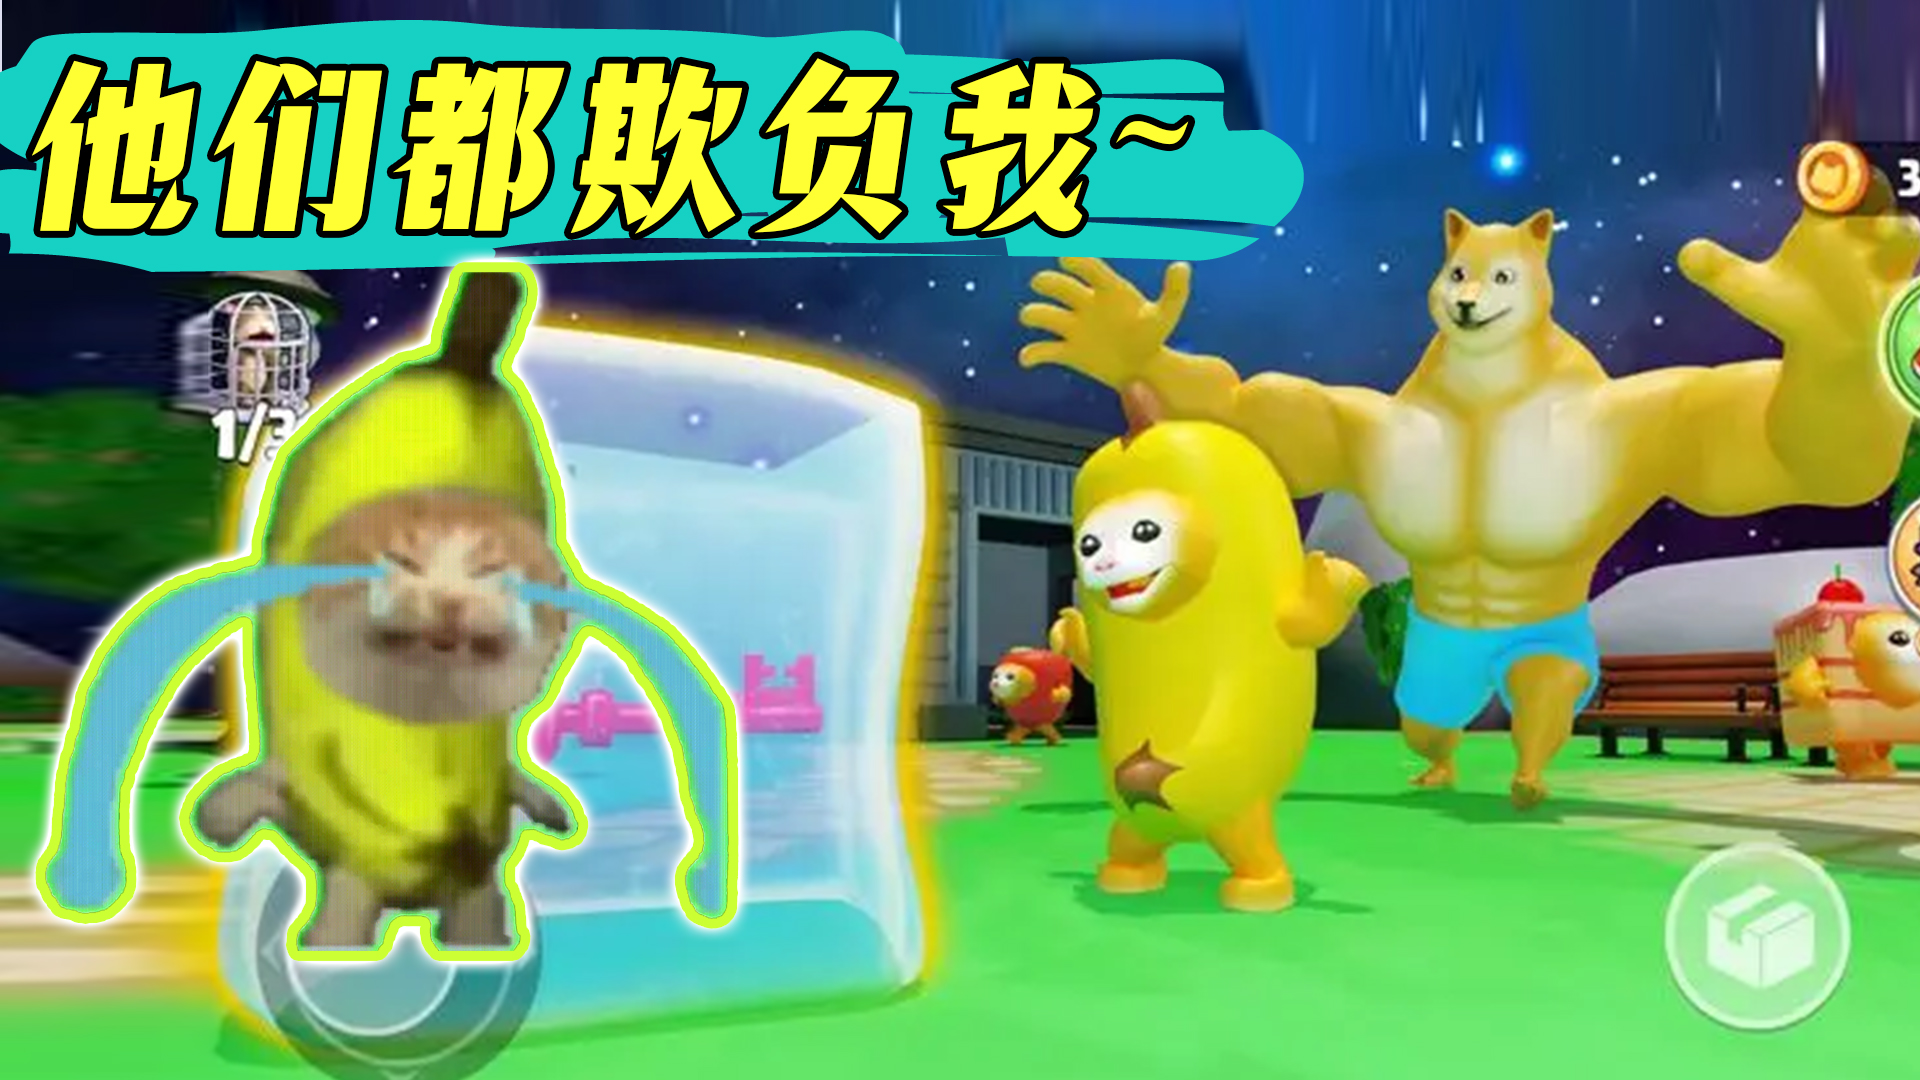 【IOS游戏发现】用香蕉猫表情包，竟做了一款游戏！太可爱了吧！